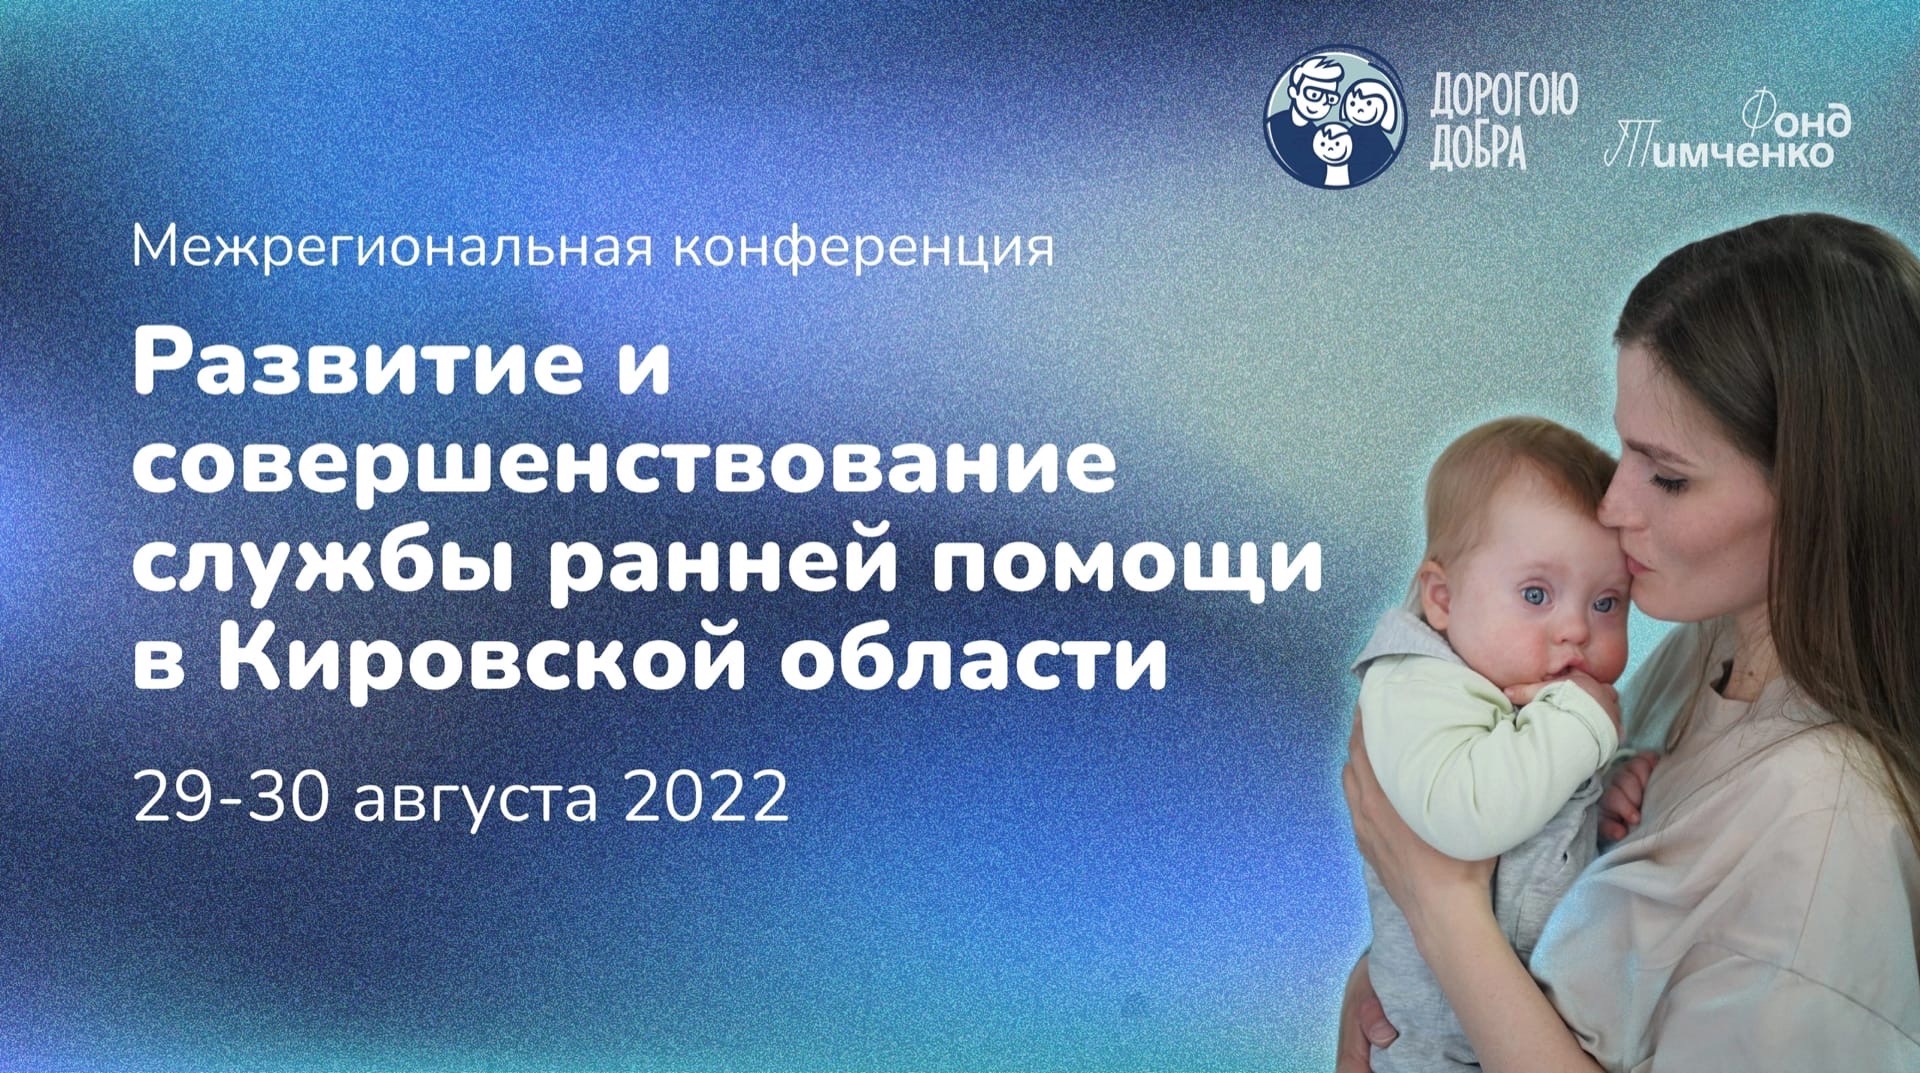 Межрегиональная конференция "Развитие и совершенствование службы ранней помощи в Кировской области"